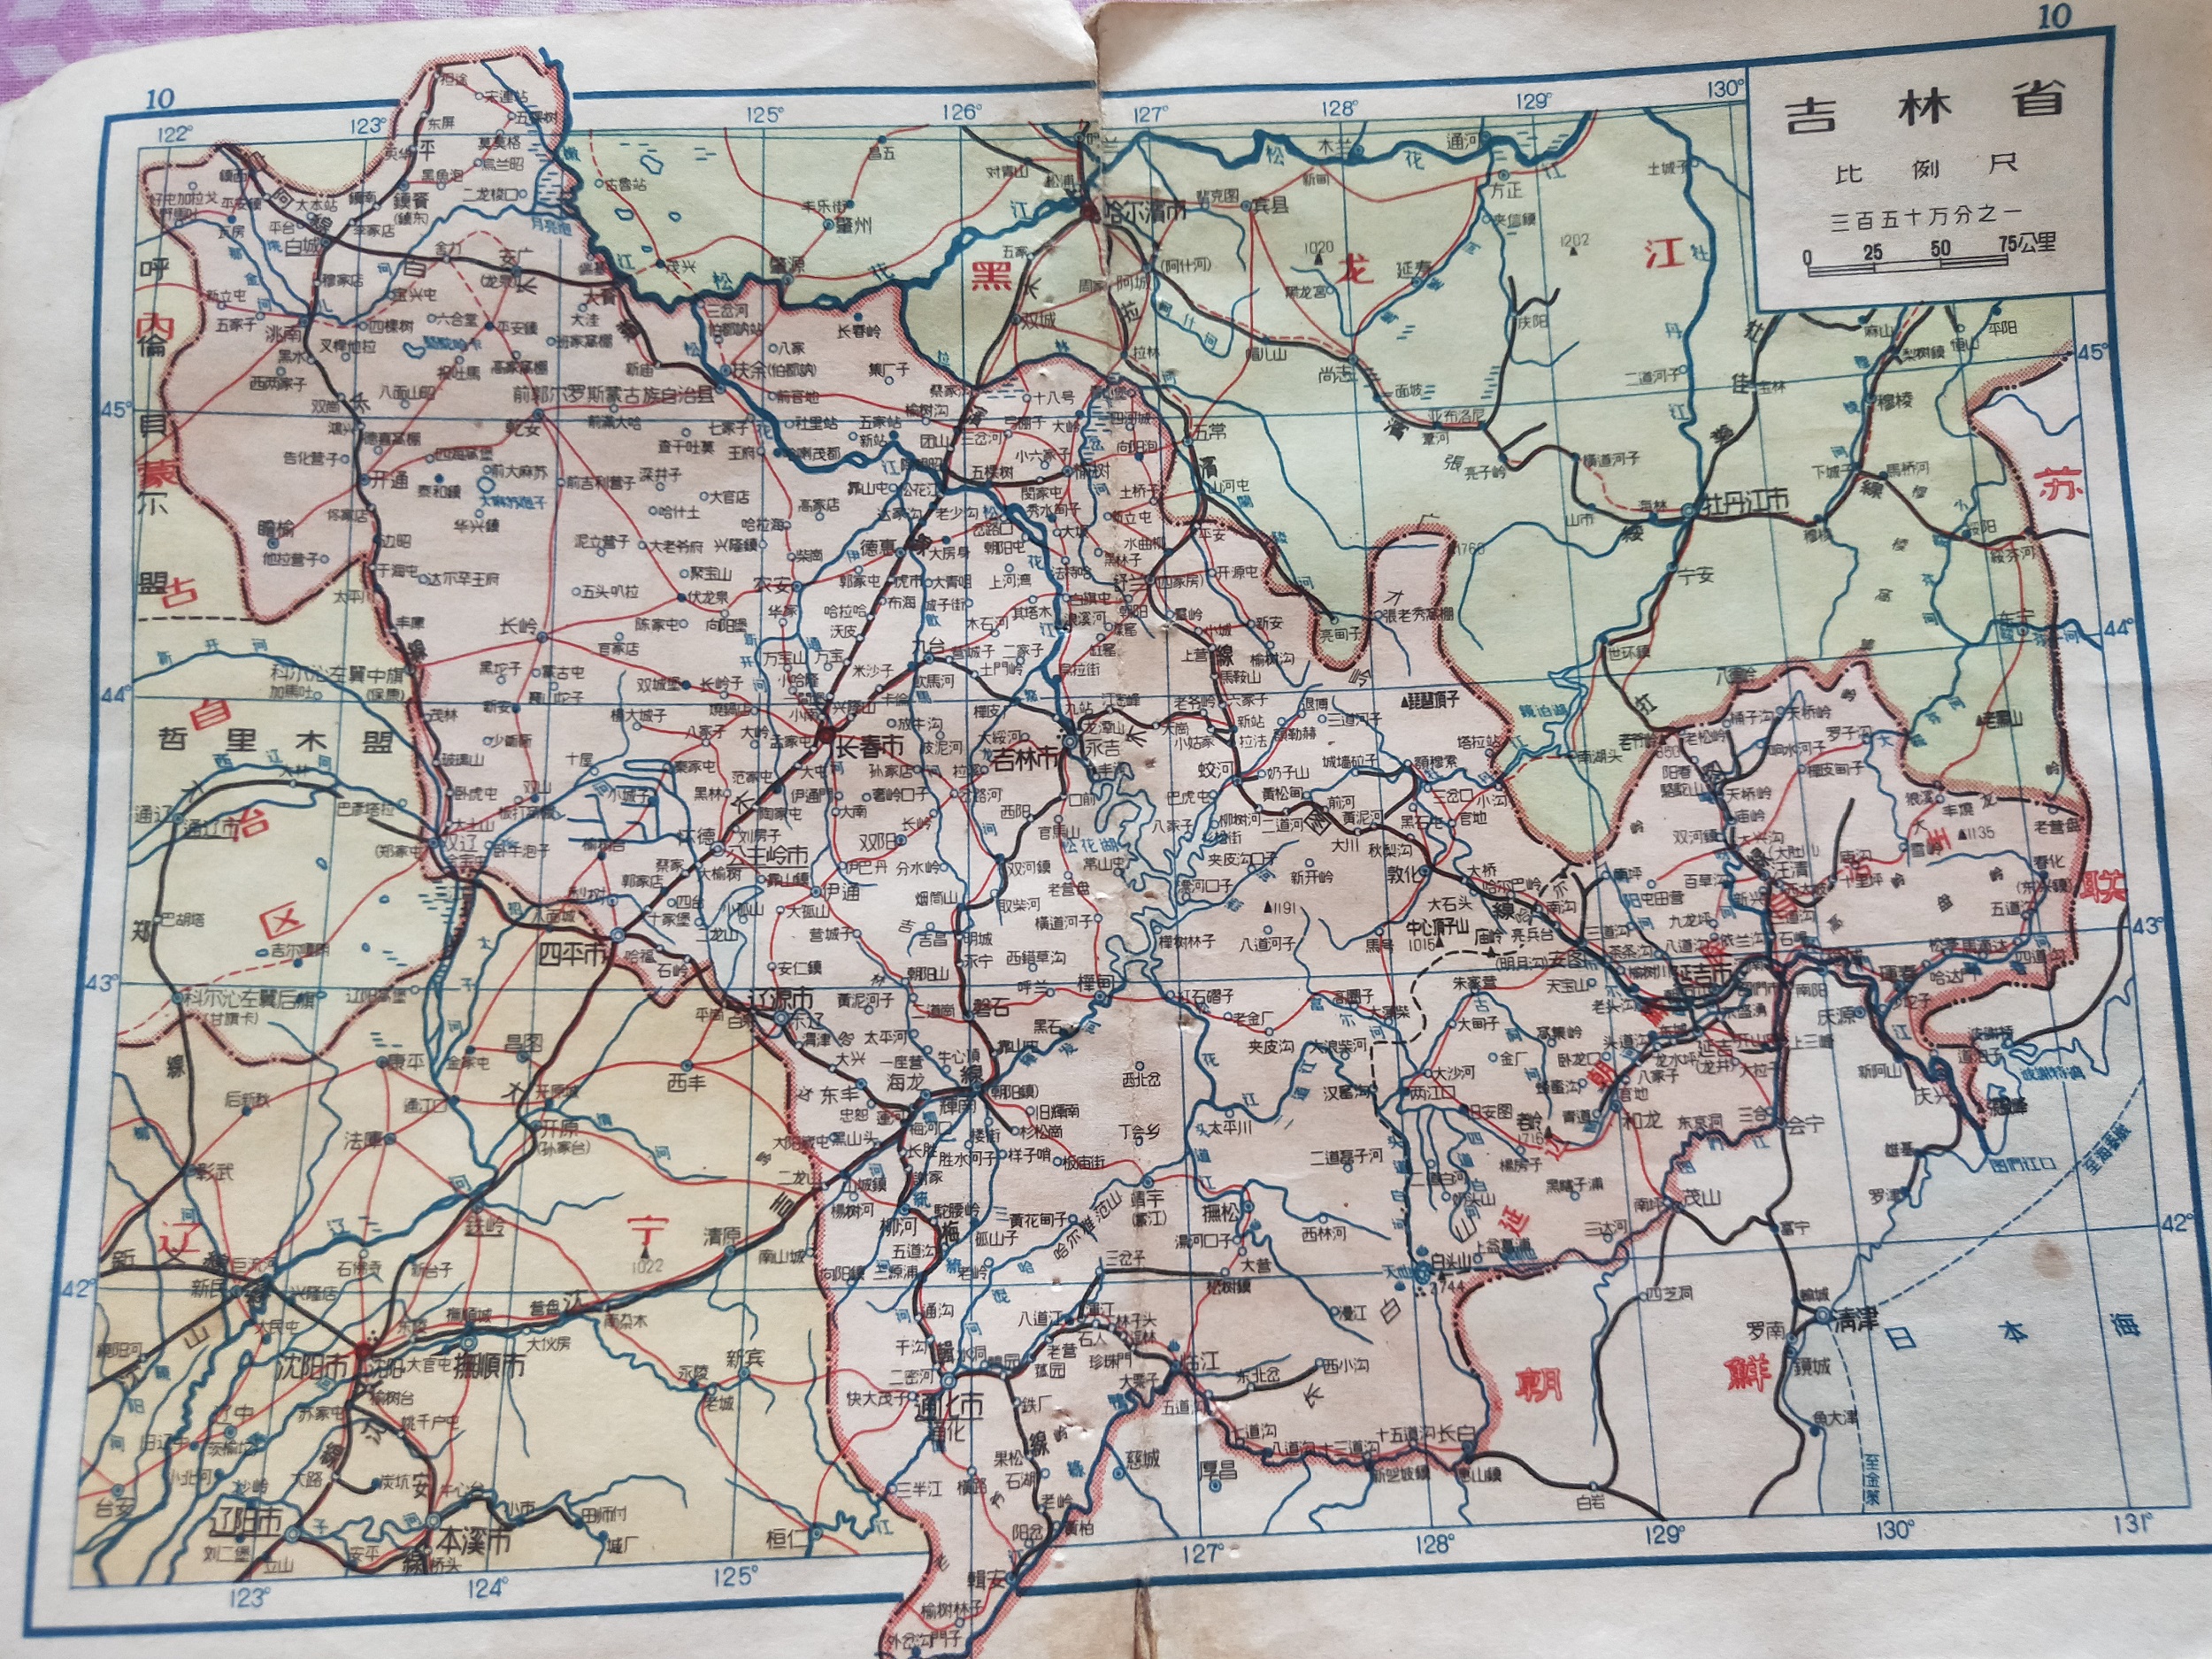 地图里的中国1957年的东北与华北分省区划